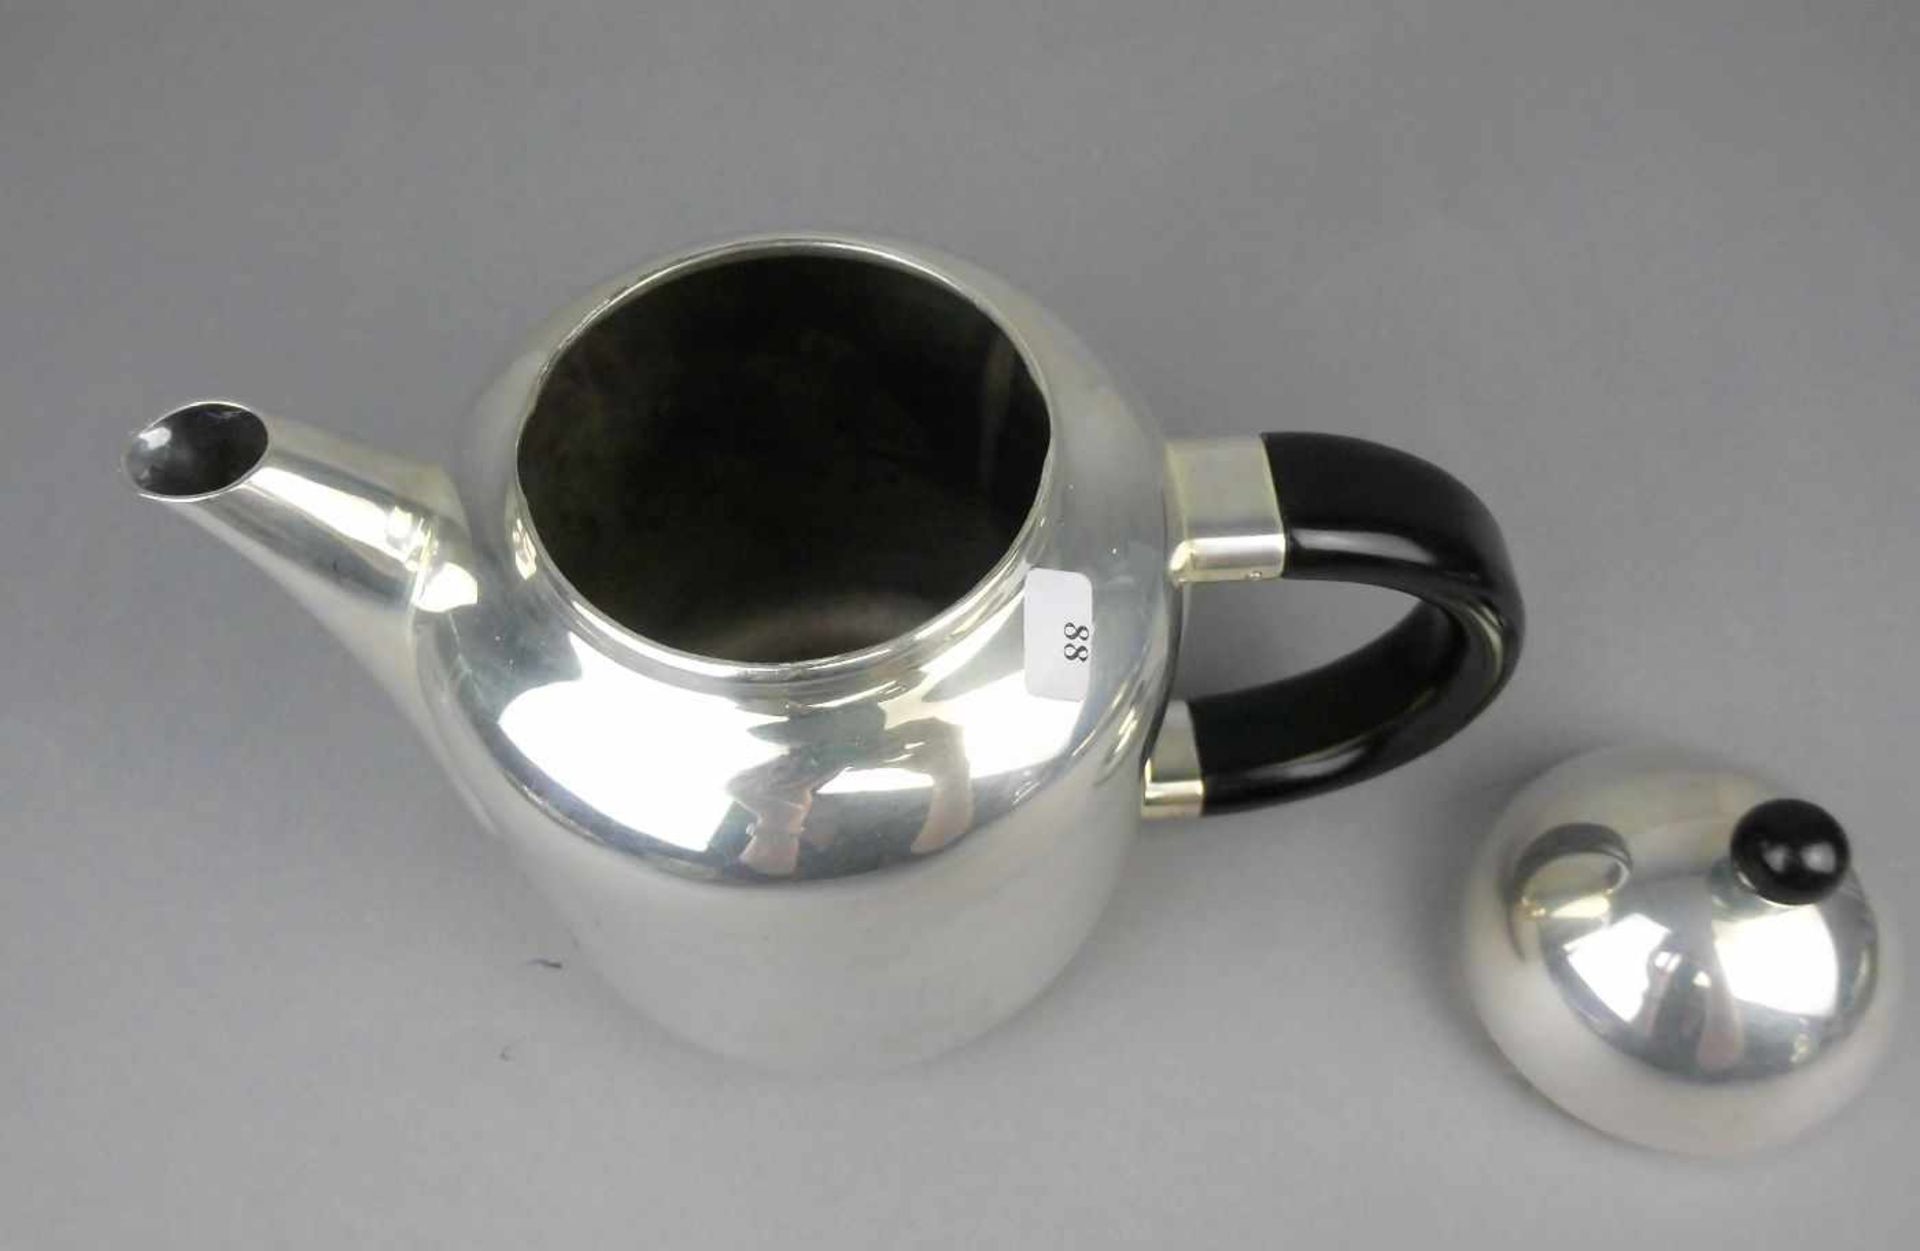 KAFFEEKANNE IM BAUHAUS - STIL, Form Silhouette, 925er Silber (776 g), gepunzt mit Halbmond, Krone, - Image 4 of 7